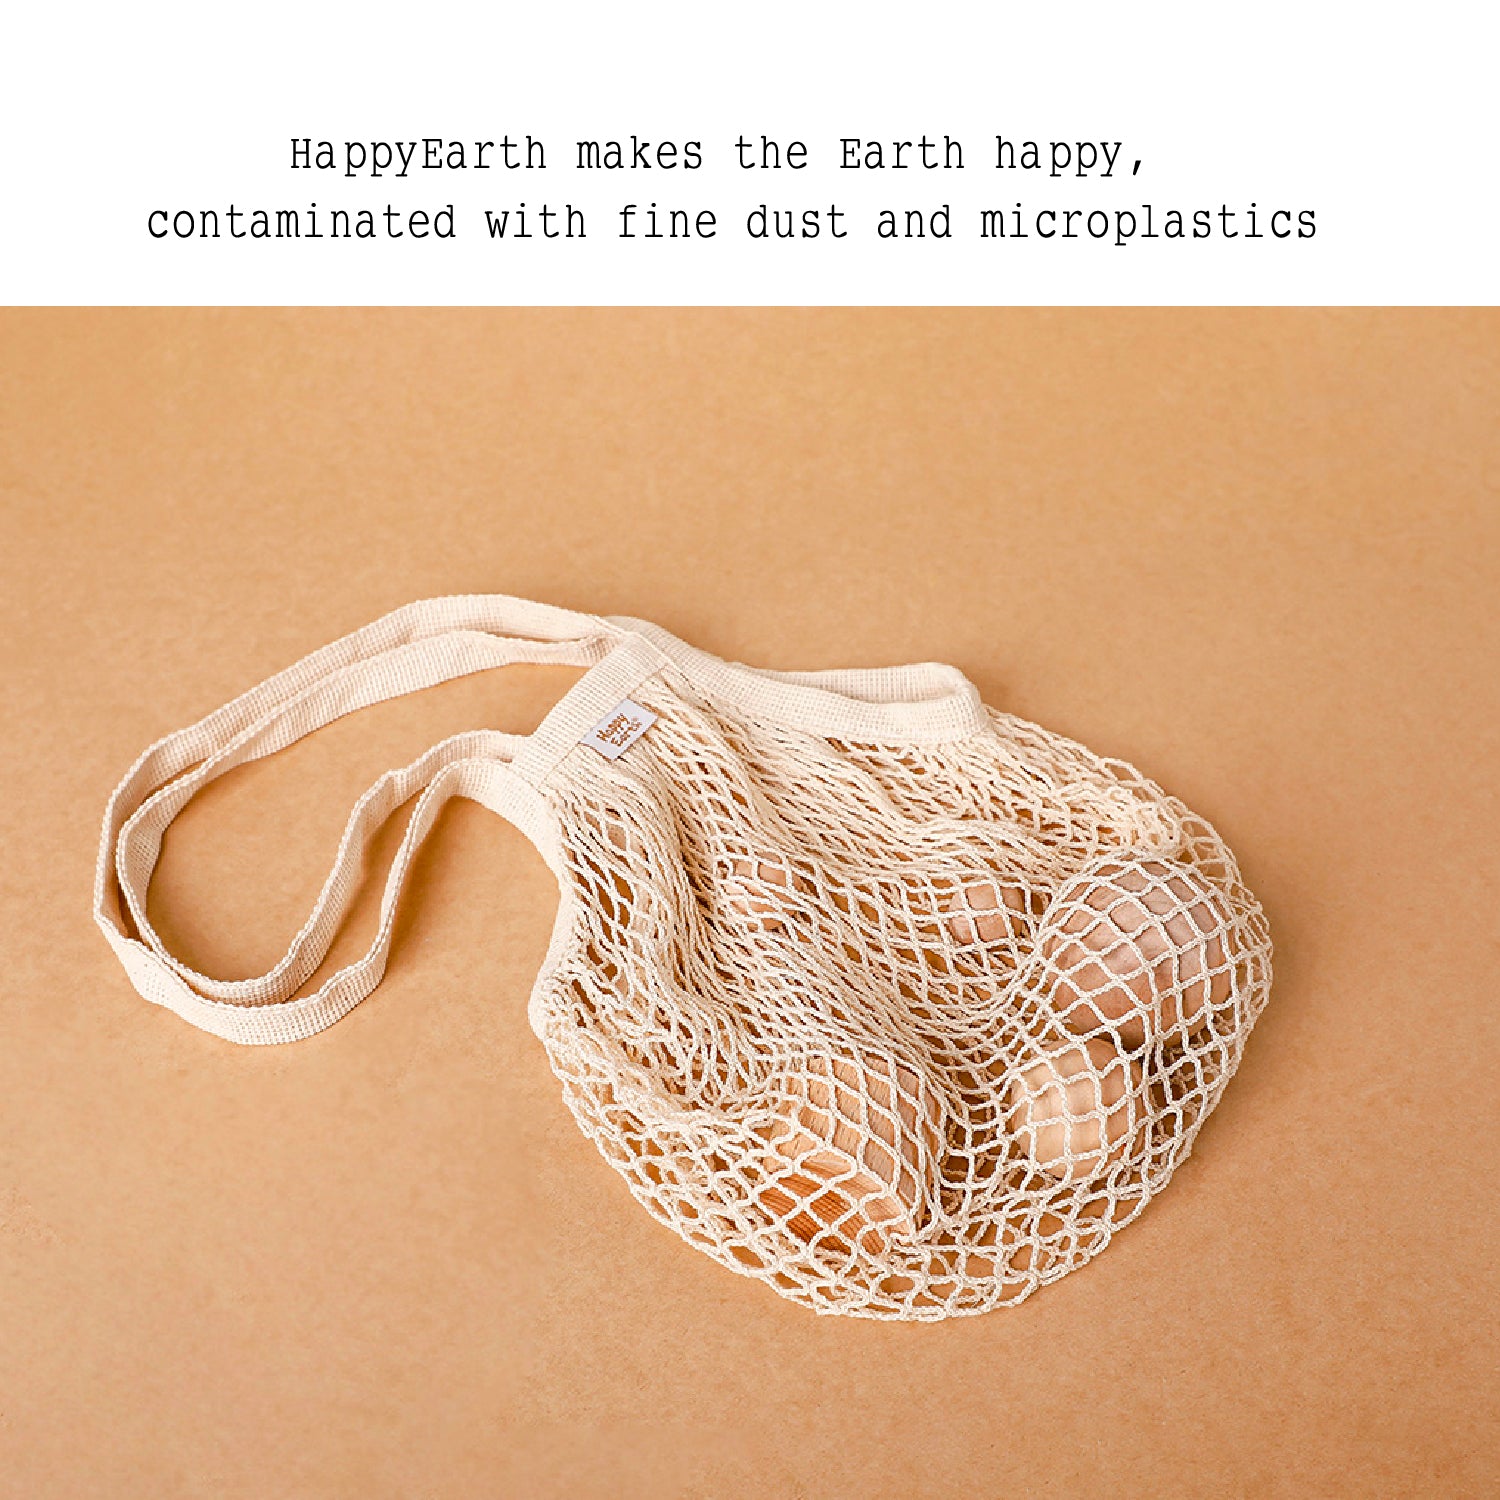 Happyearth Eco bag - Slowrecipe